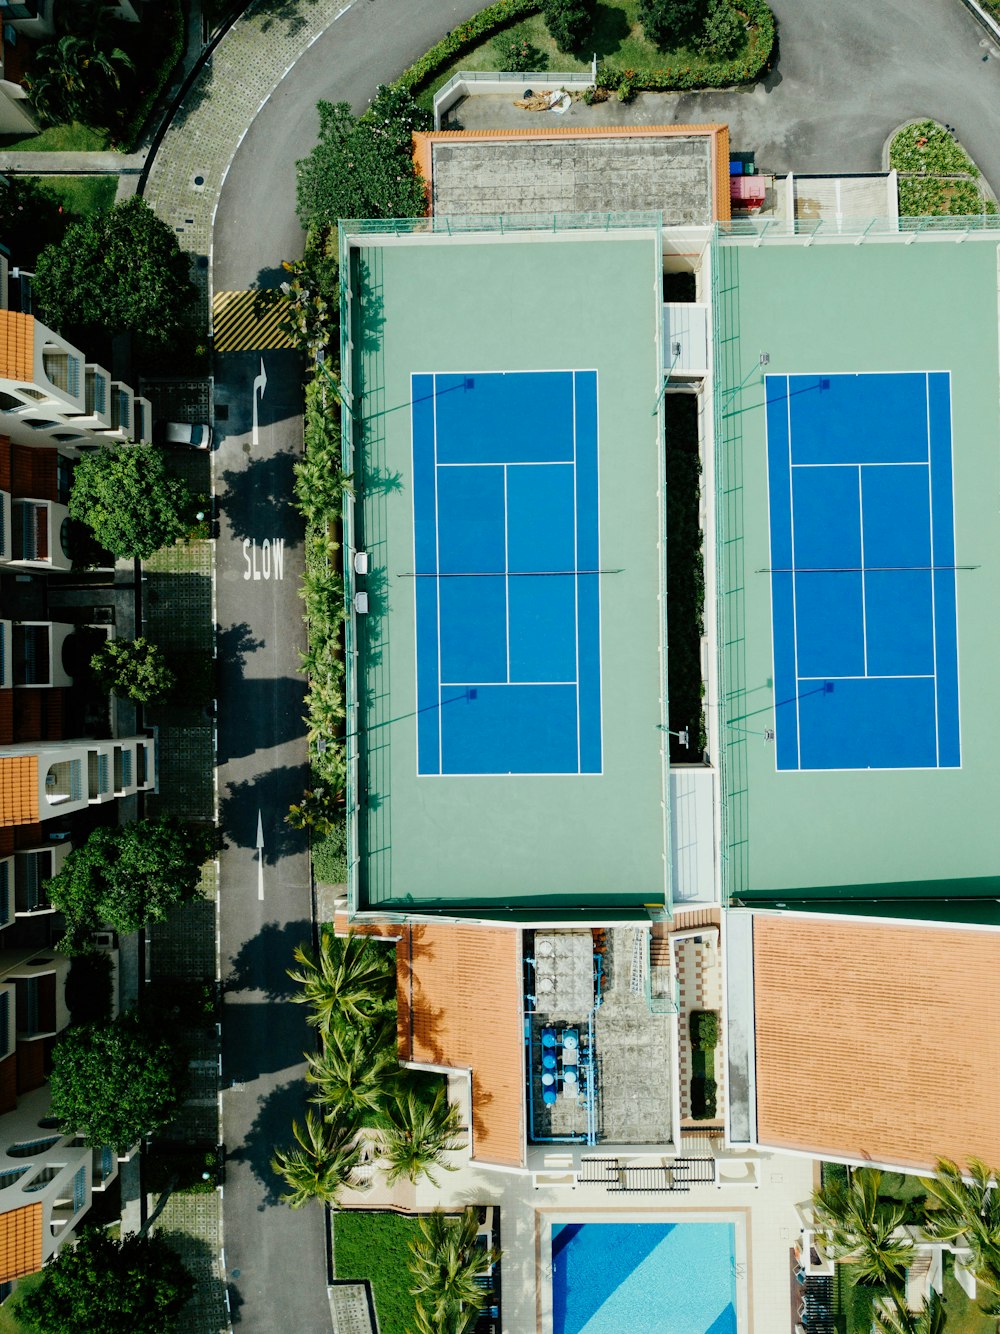 Photographie aérienne de deux terrains de badminton au bord de la route pendant la journée